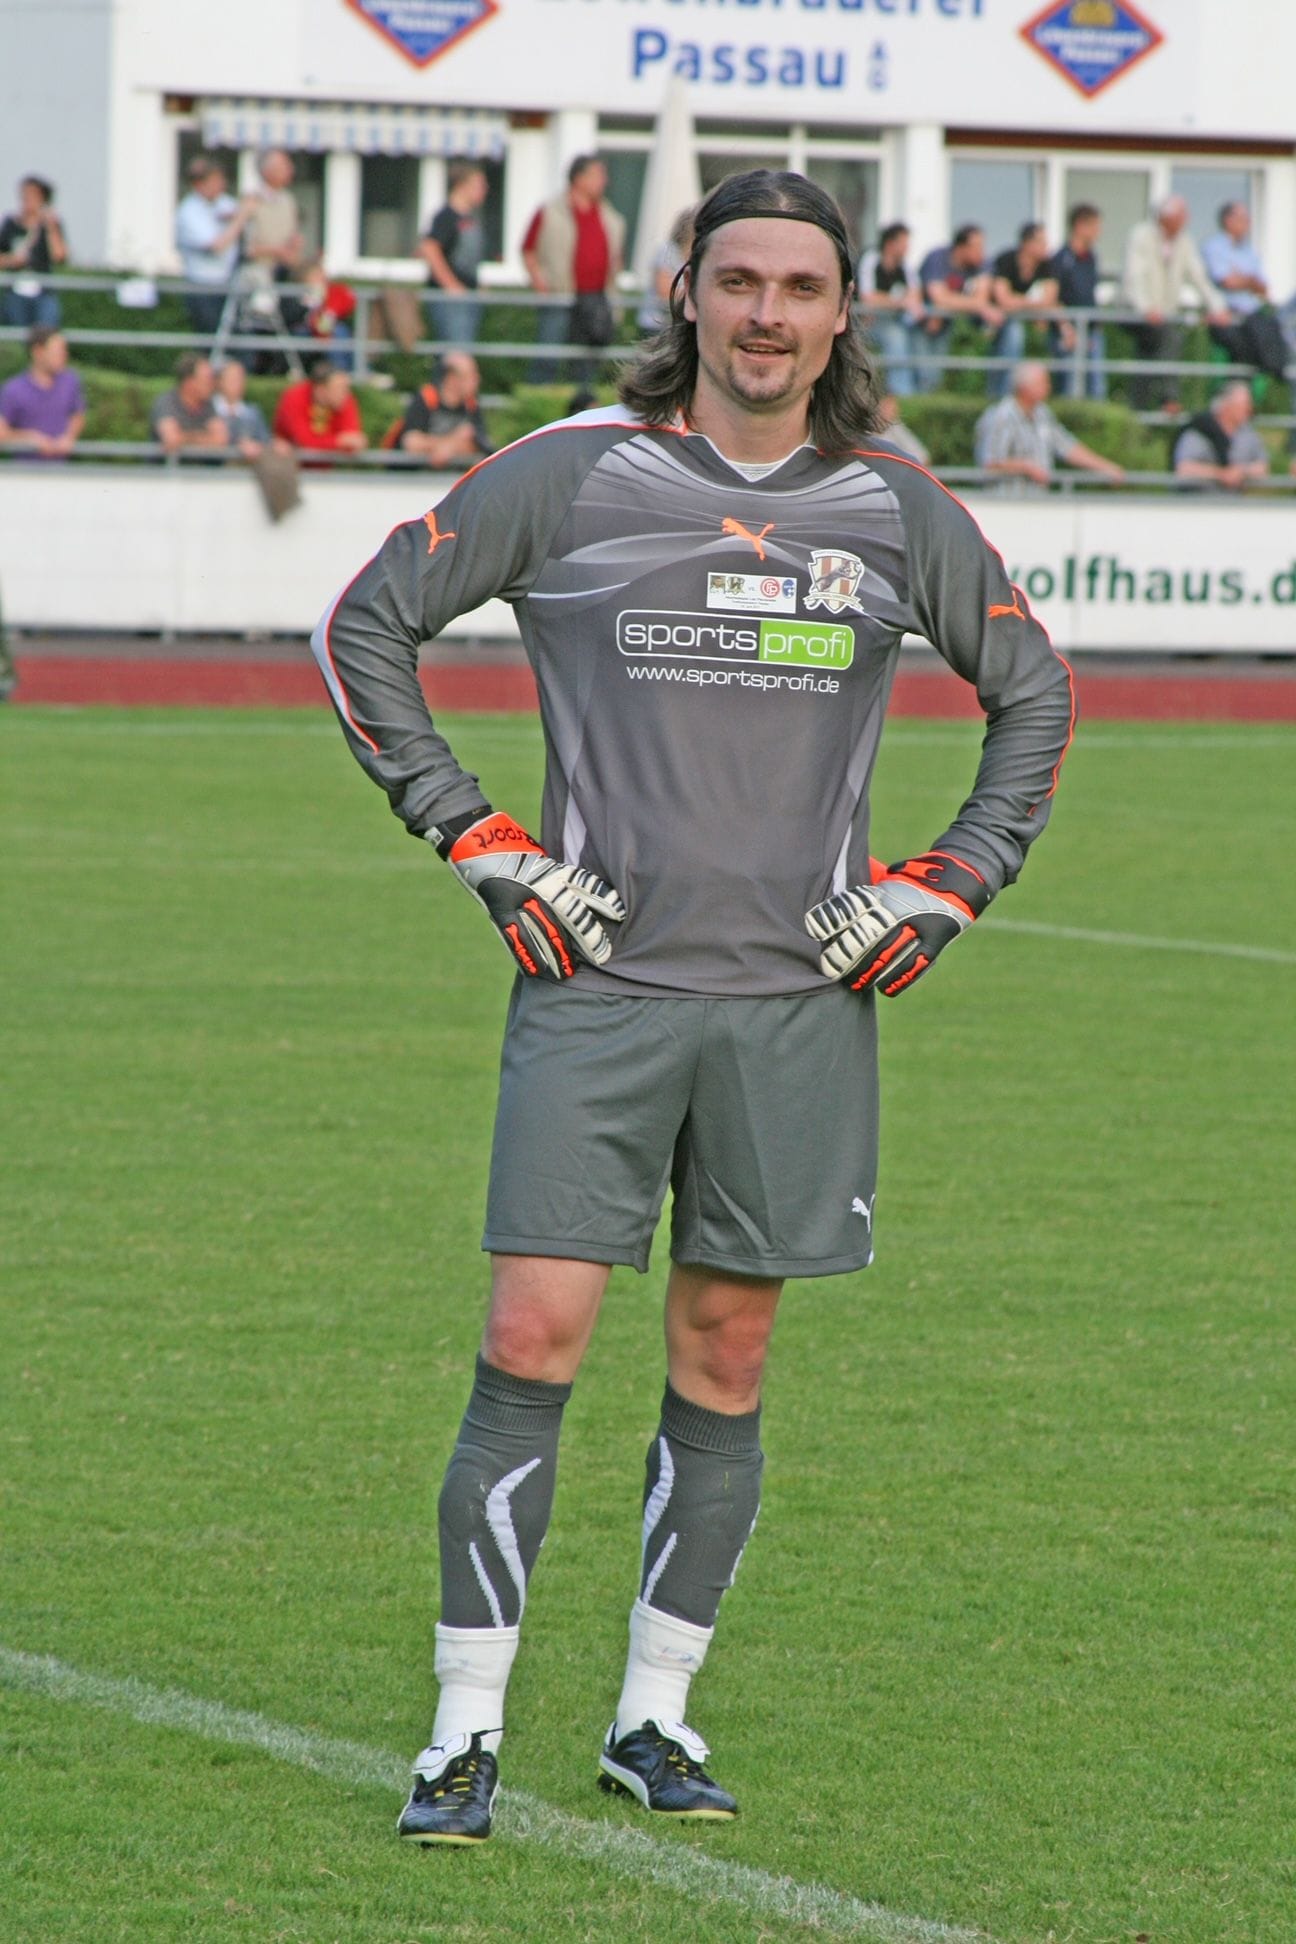 ... gab er in Passau im Dreiflüssestadion sein Abschiedsspiel, bei dem unter anderem Guido Buchwald, Pierre van Hooijdonk und Fredi Bobic dabei waren.